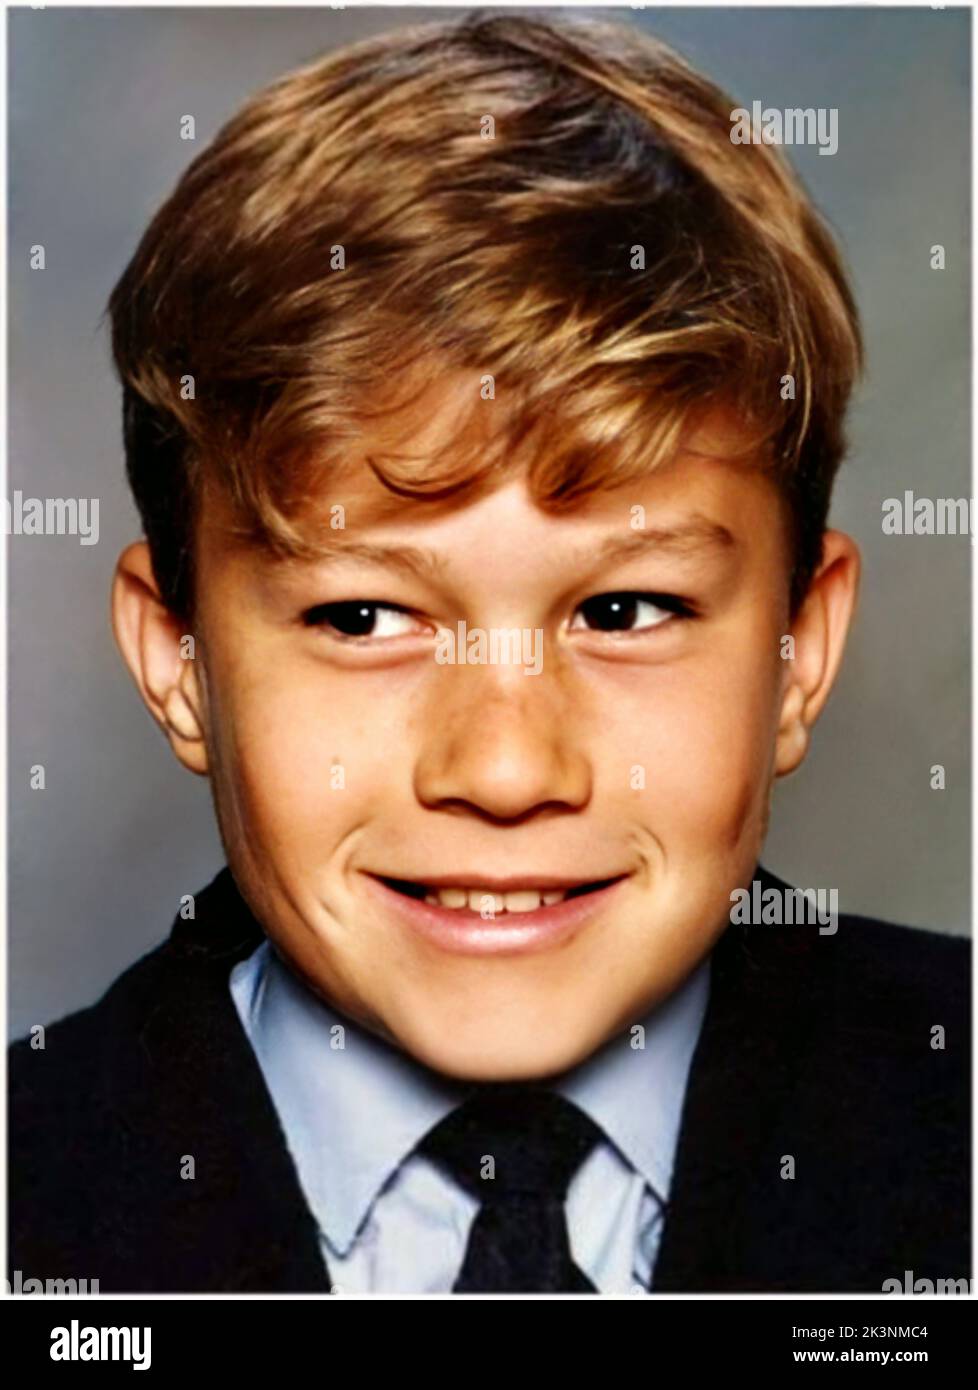 1989 c. , AUSTRALIEN : der berühmte australische Schauspieler HEATH LEDGER ( 1979 - 2008 ), im Alter von 10 Jahren . Unbekannter Fotograf .- GESCHICHTE - FOTO STORICHE - ATTORE - FILM - KINO - SEX SYMBOL - personalità da giovane - Persönlichkeit Persönlichkeiten als jung - INFANZIA - KINDHEIT - da BAMBINO - BAMBINI - KIND - KINDER - Teenager - Lächeln - sorriso --- ARCHIVIO GBB Stockfoto